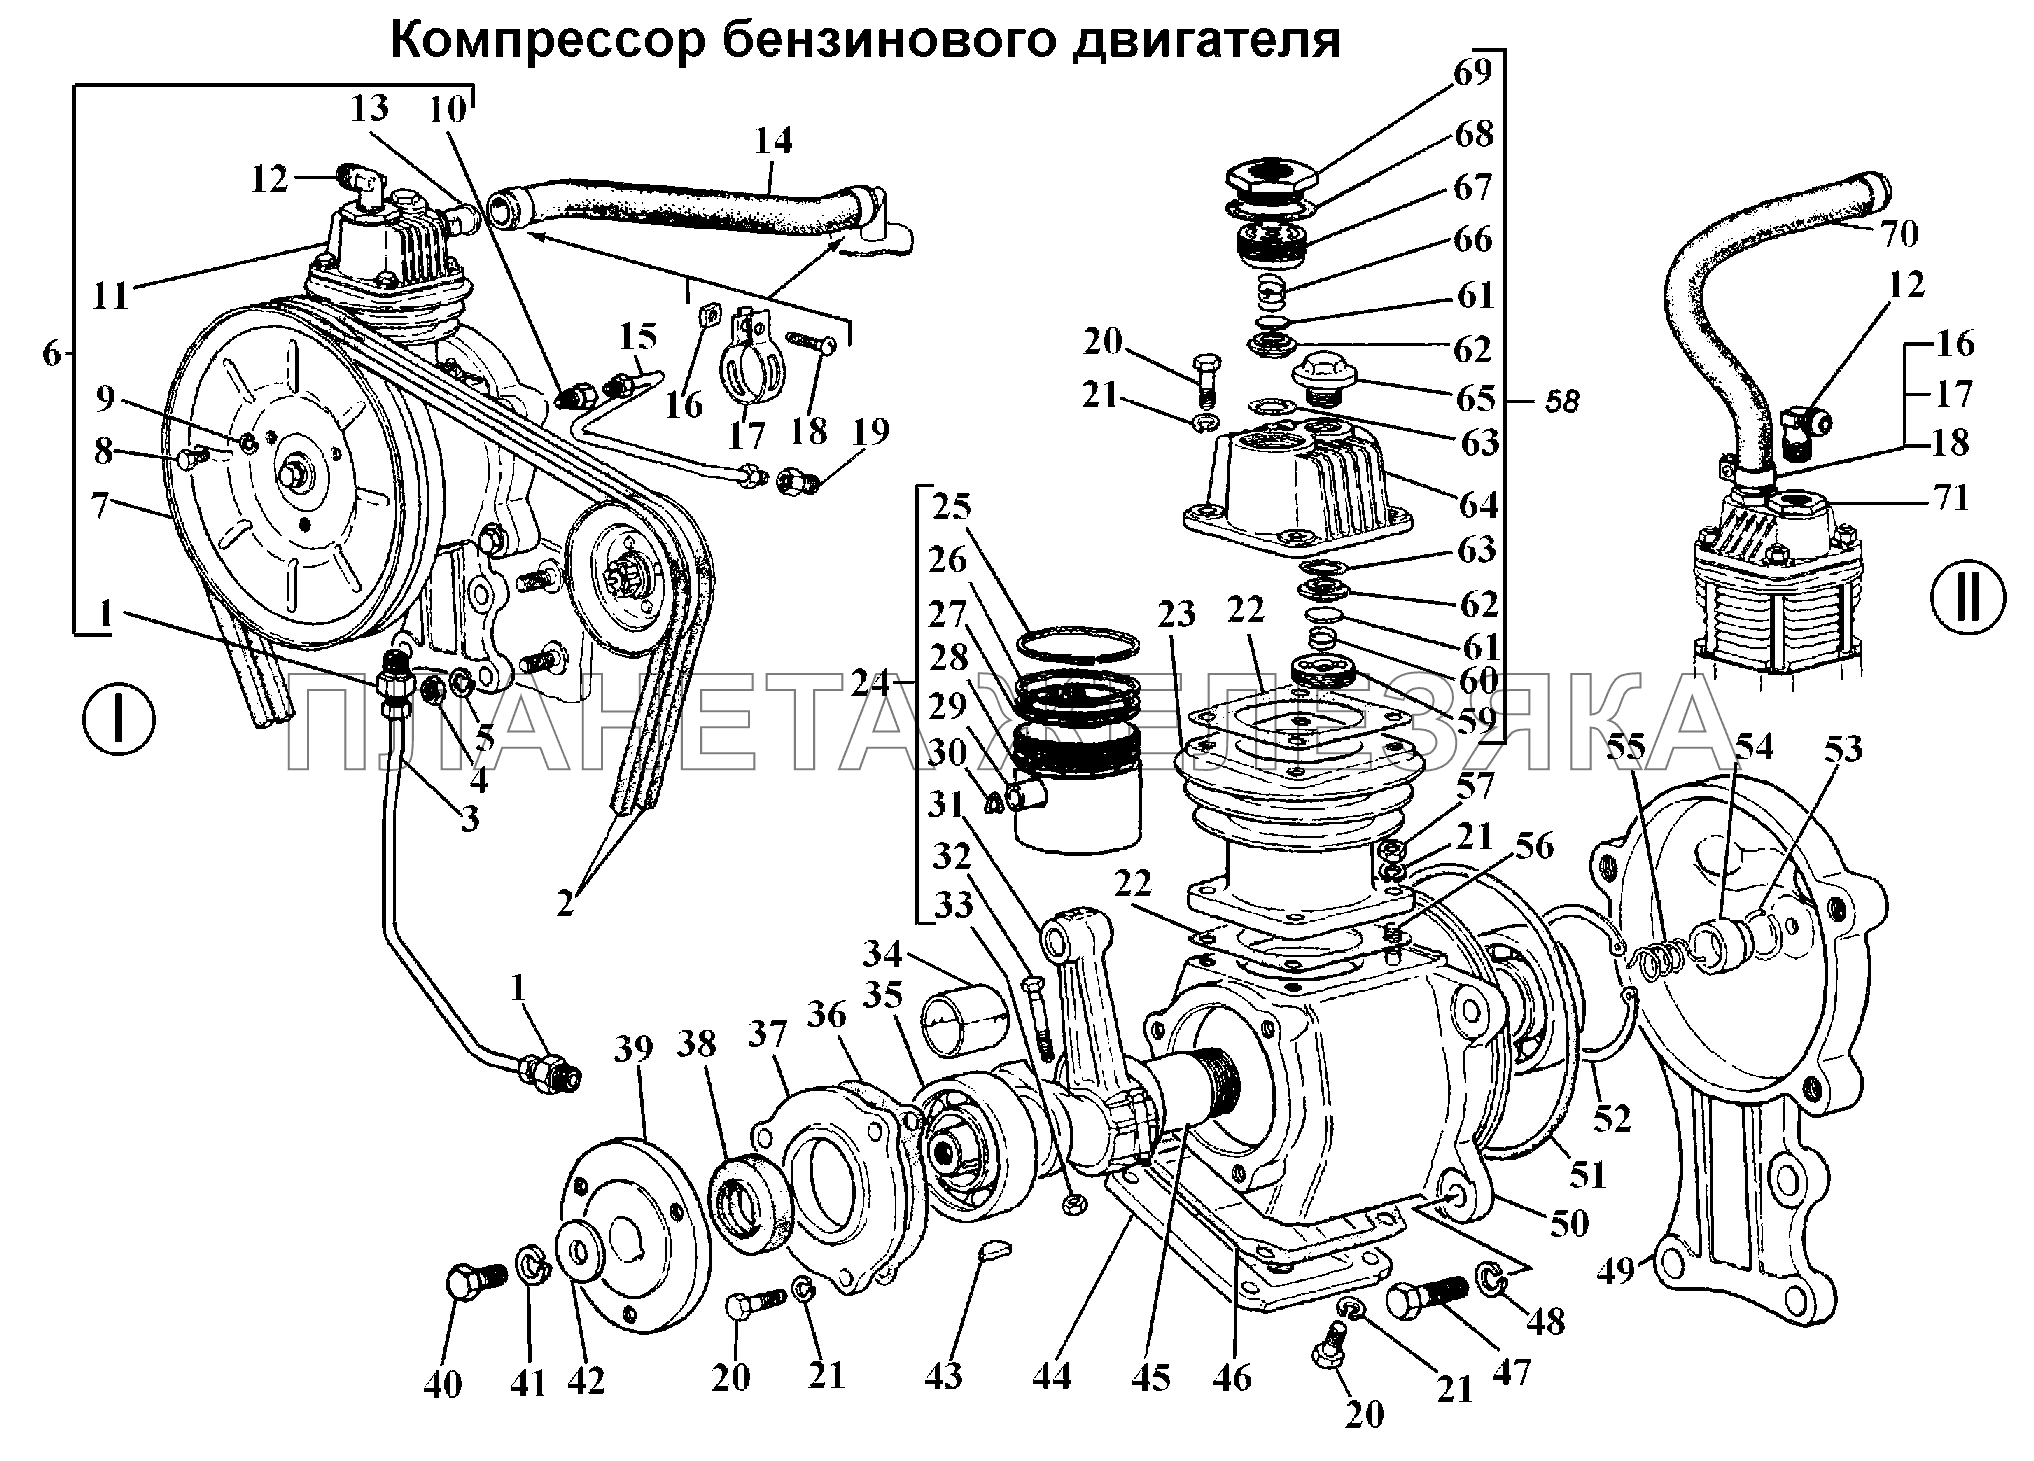 Компрессор бензинового двигателя ГАЗ-3308